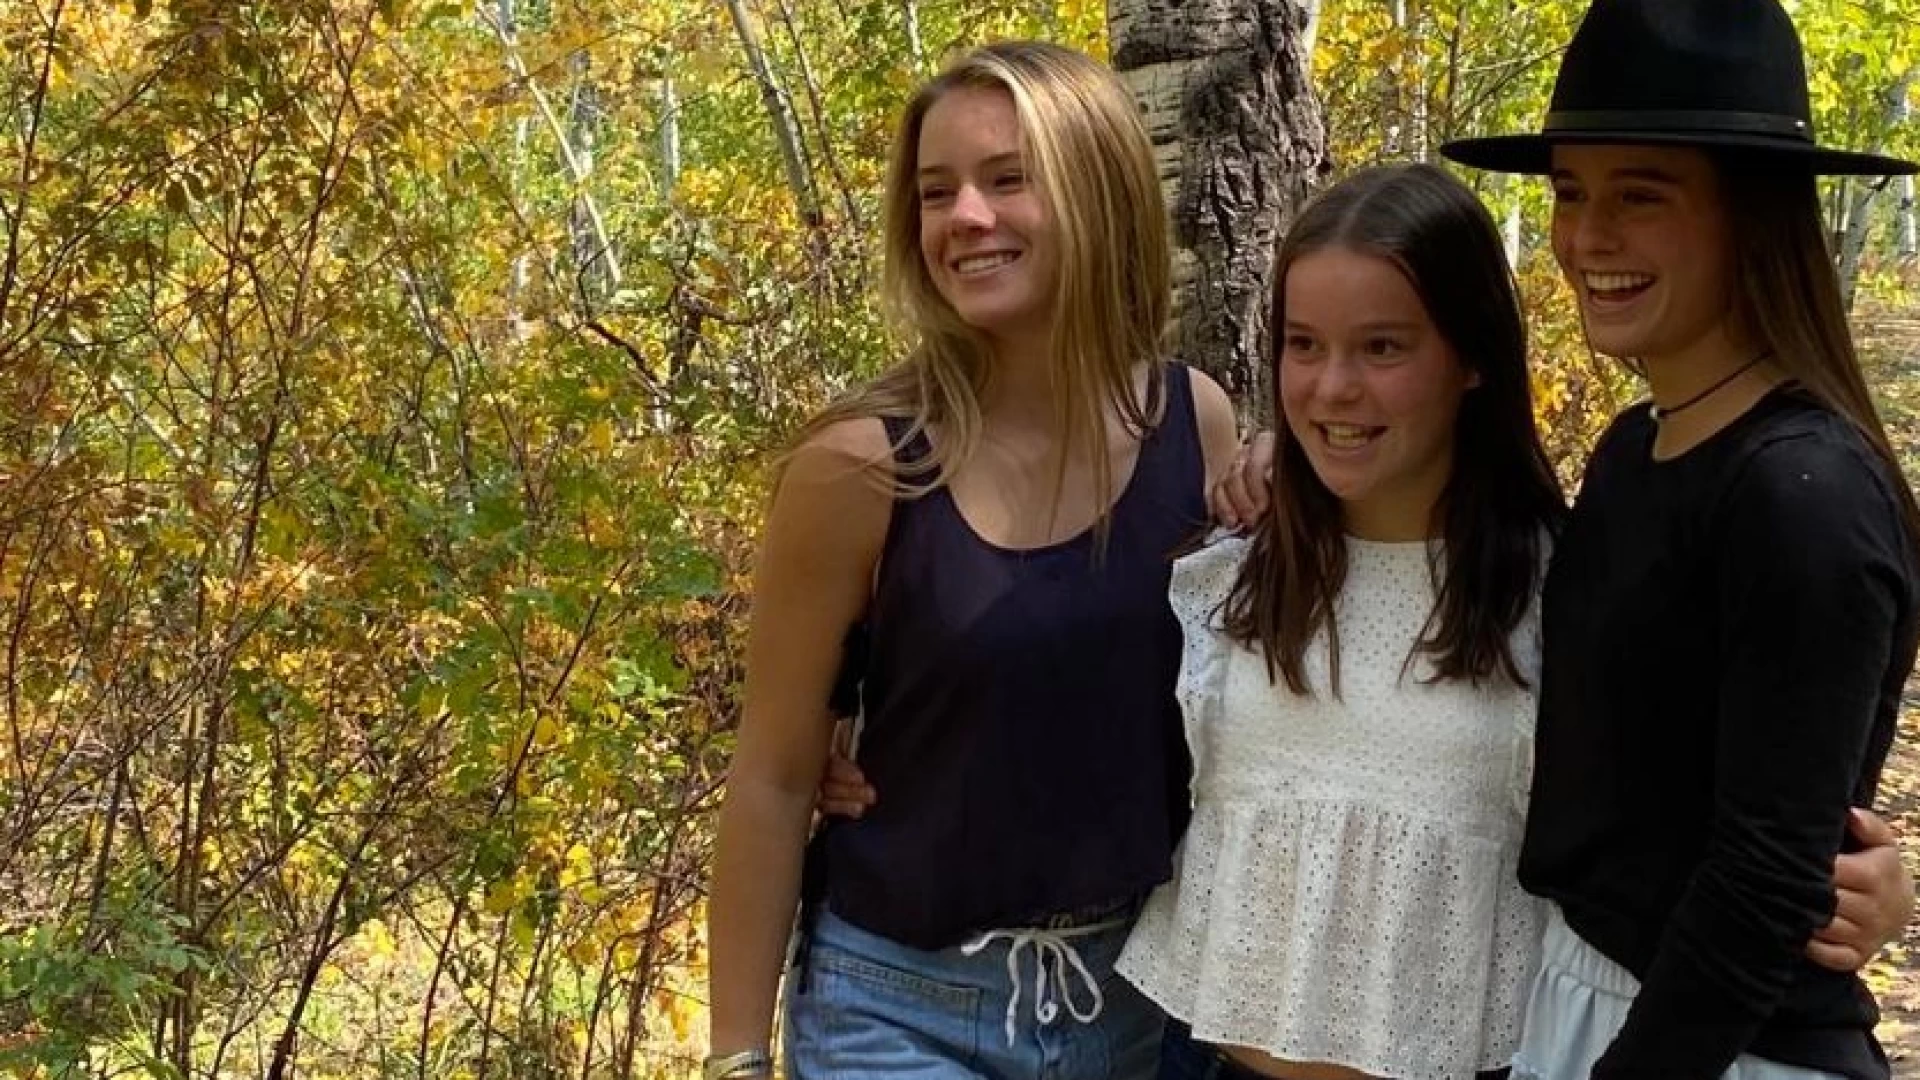 Un anno in giro per il mondo con tappa molisana (le radici): la storia di tre ragazze americane. La loro storia sul mensile Infoimpresa